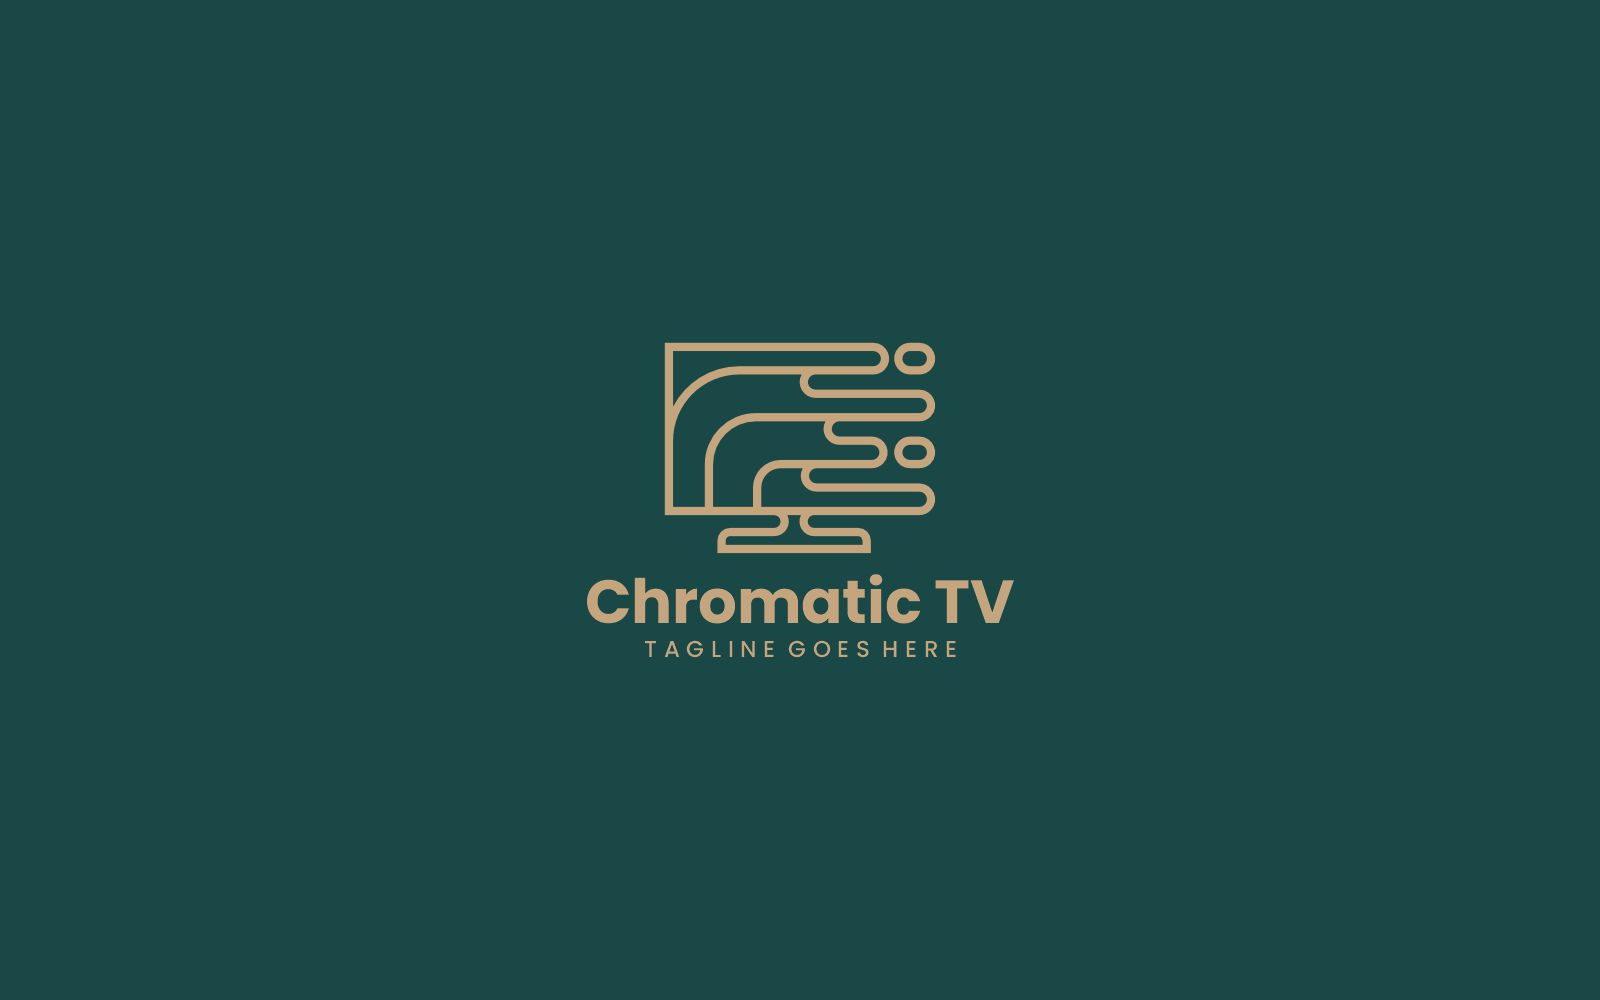 Chromatic TV Line Art Logo